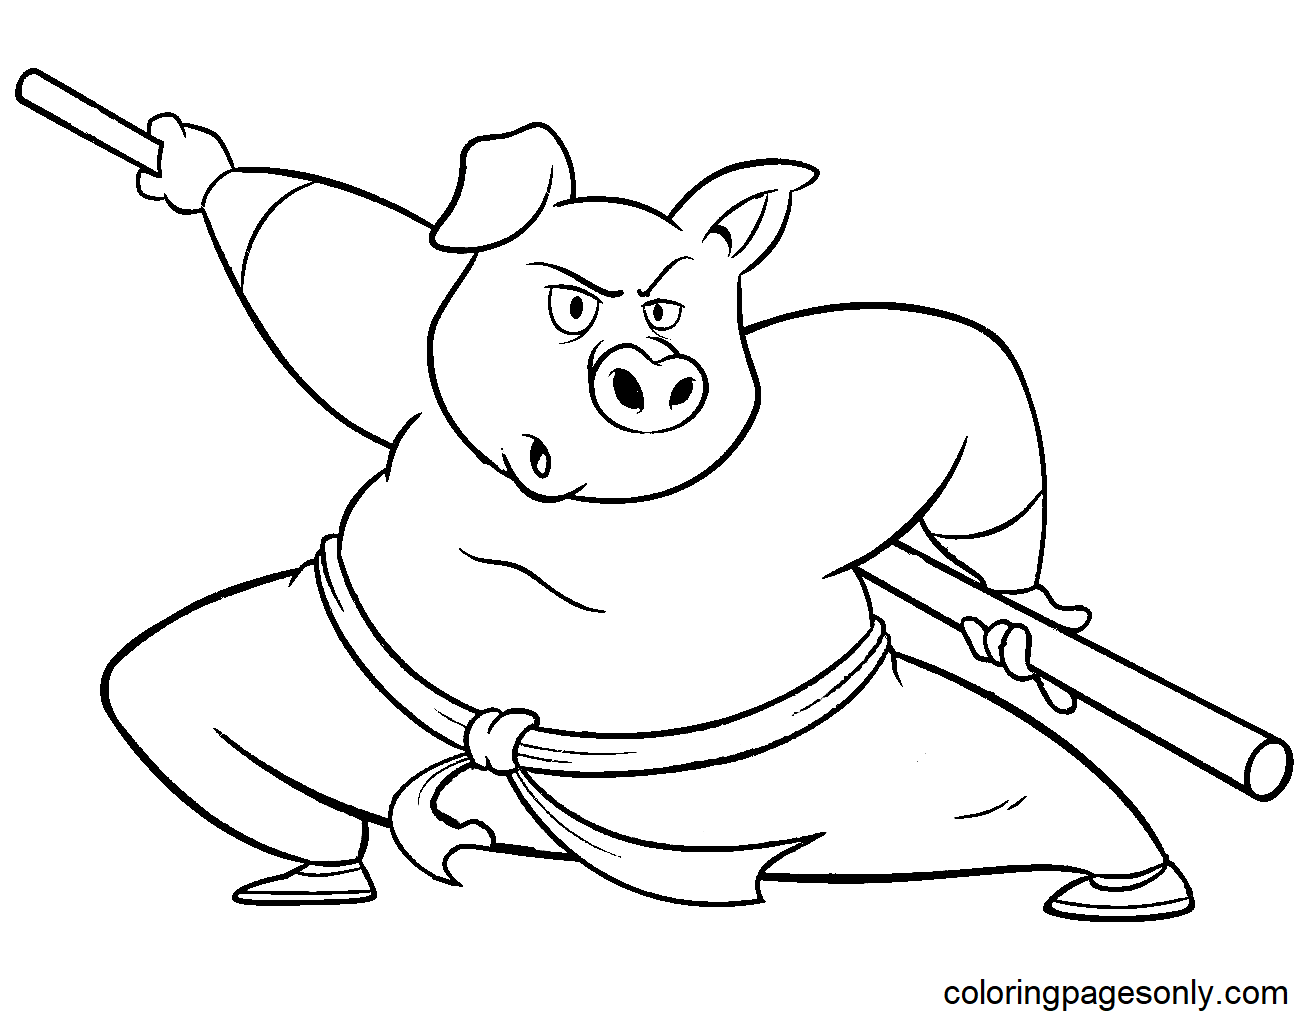 Cartoon Kung Fu Pig Coloring Page